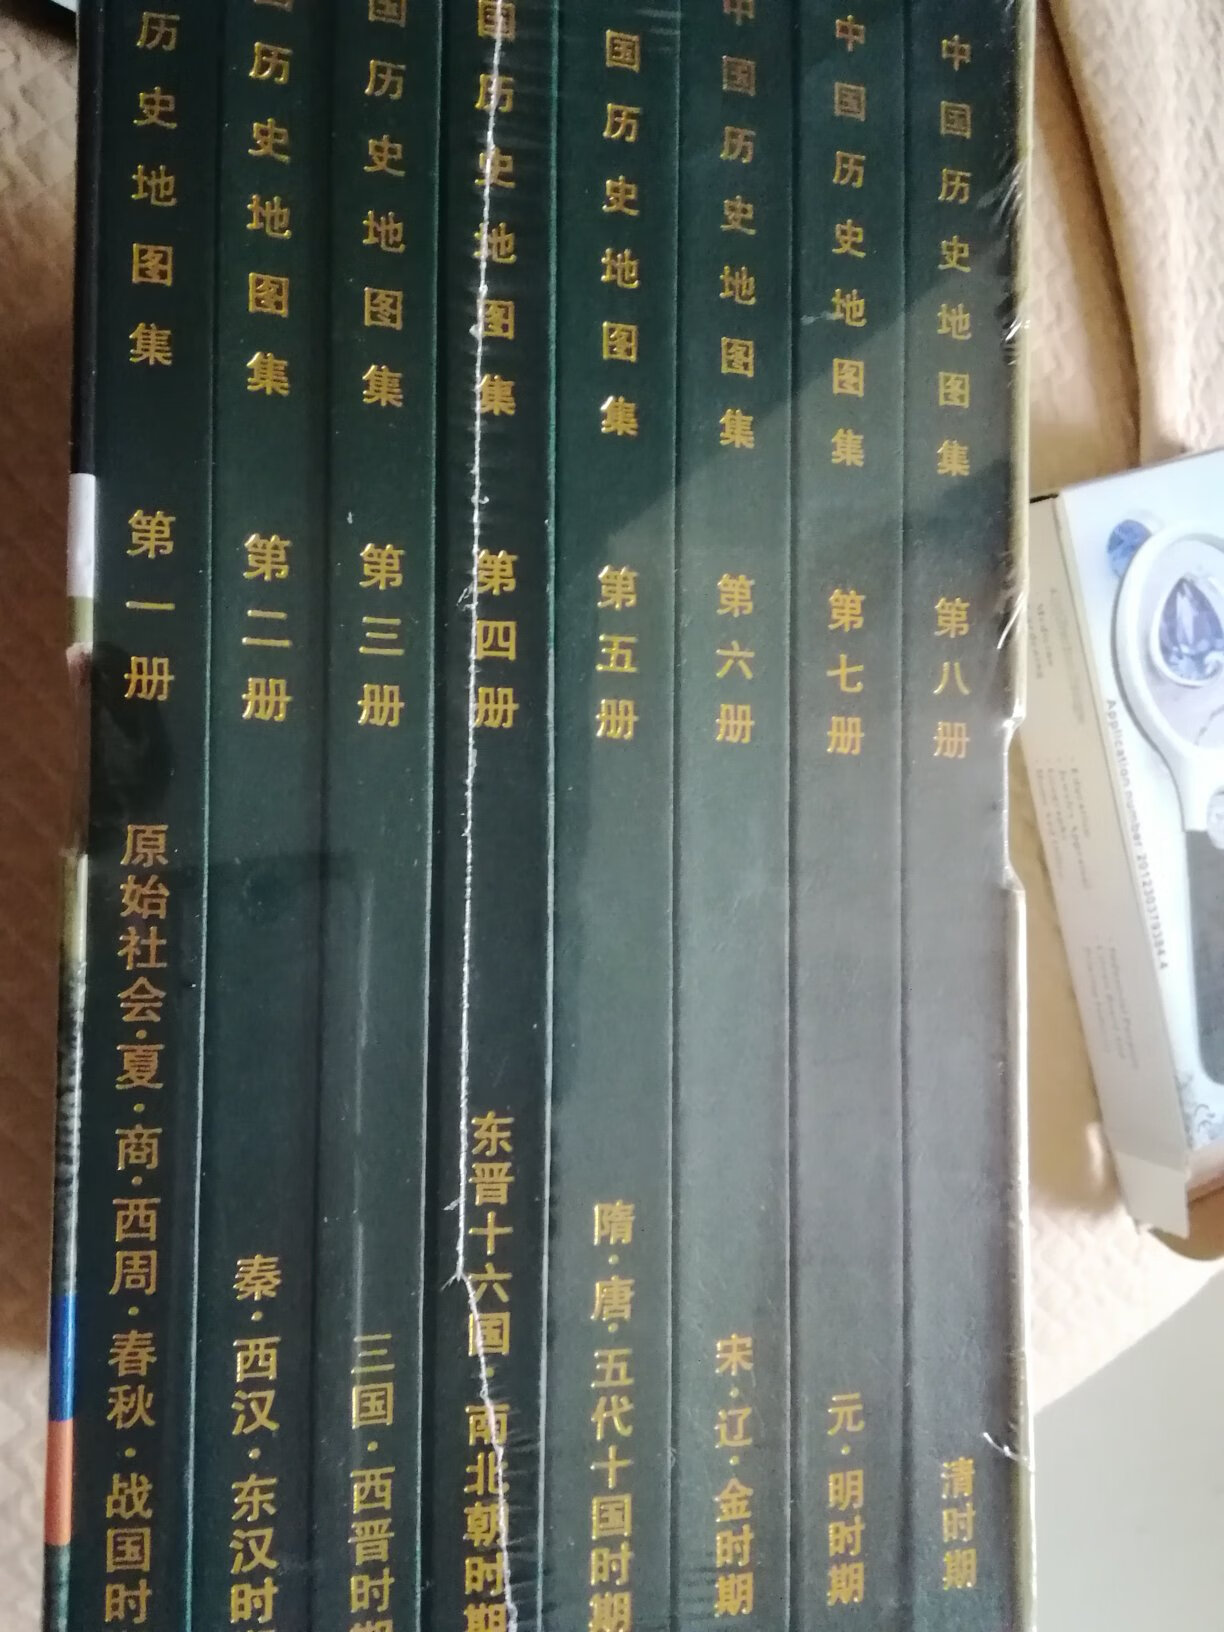 运送速度非常快。谭其骧主编的《中国历史地图集》非常具有收藏价值。